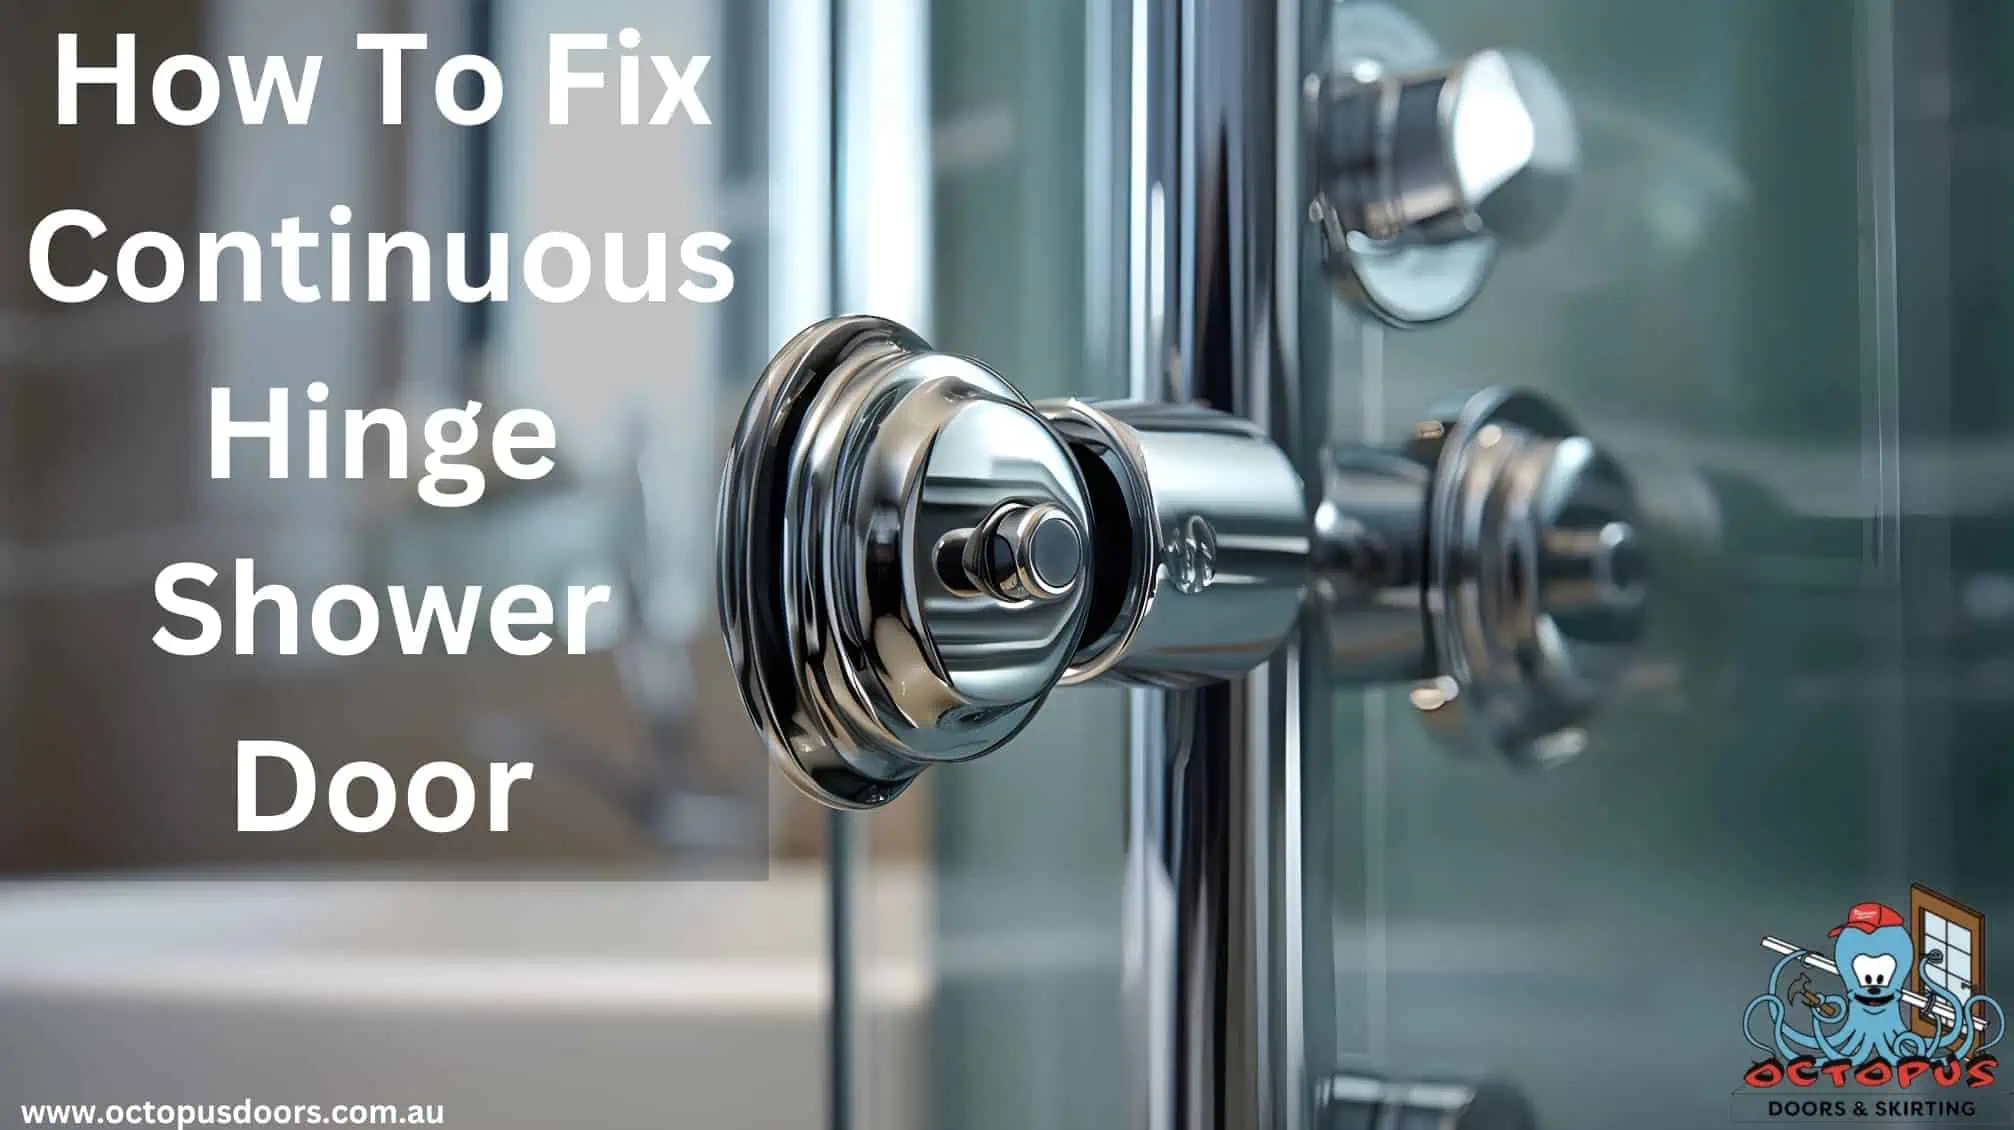 How To Fix Continuous Hinge Shower Door – Octopus Doors & Skirting